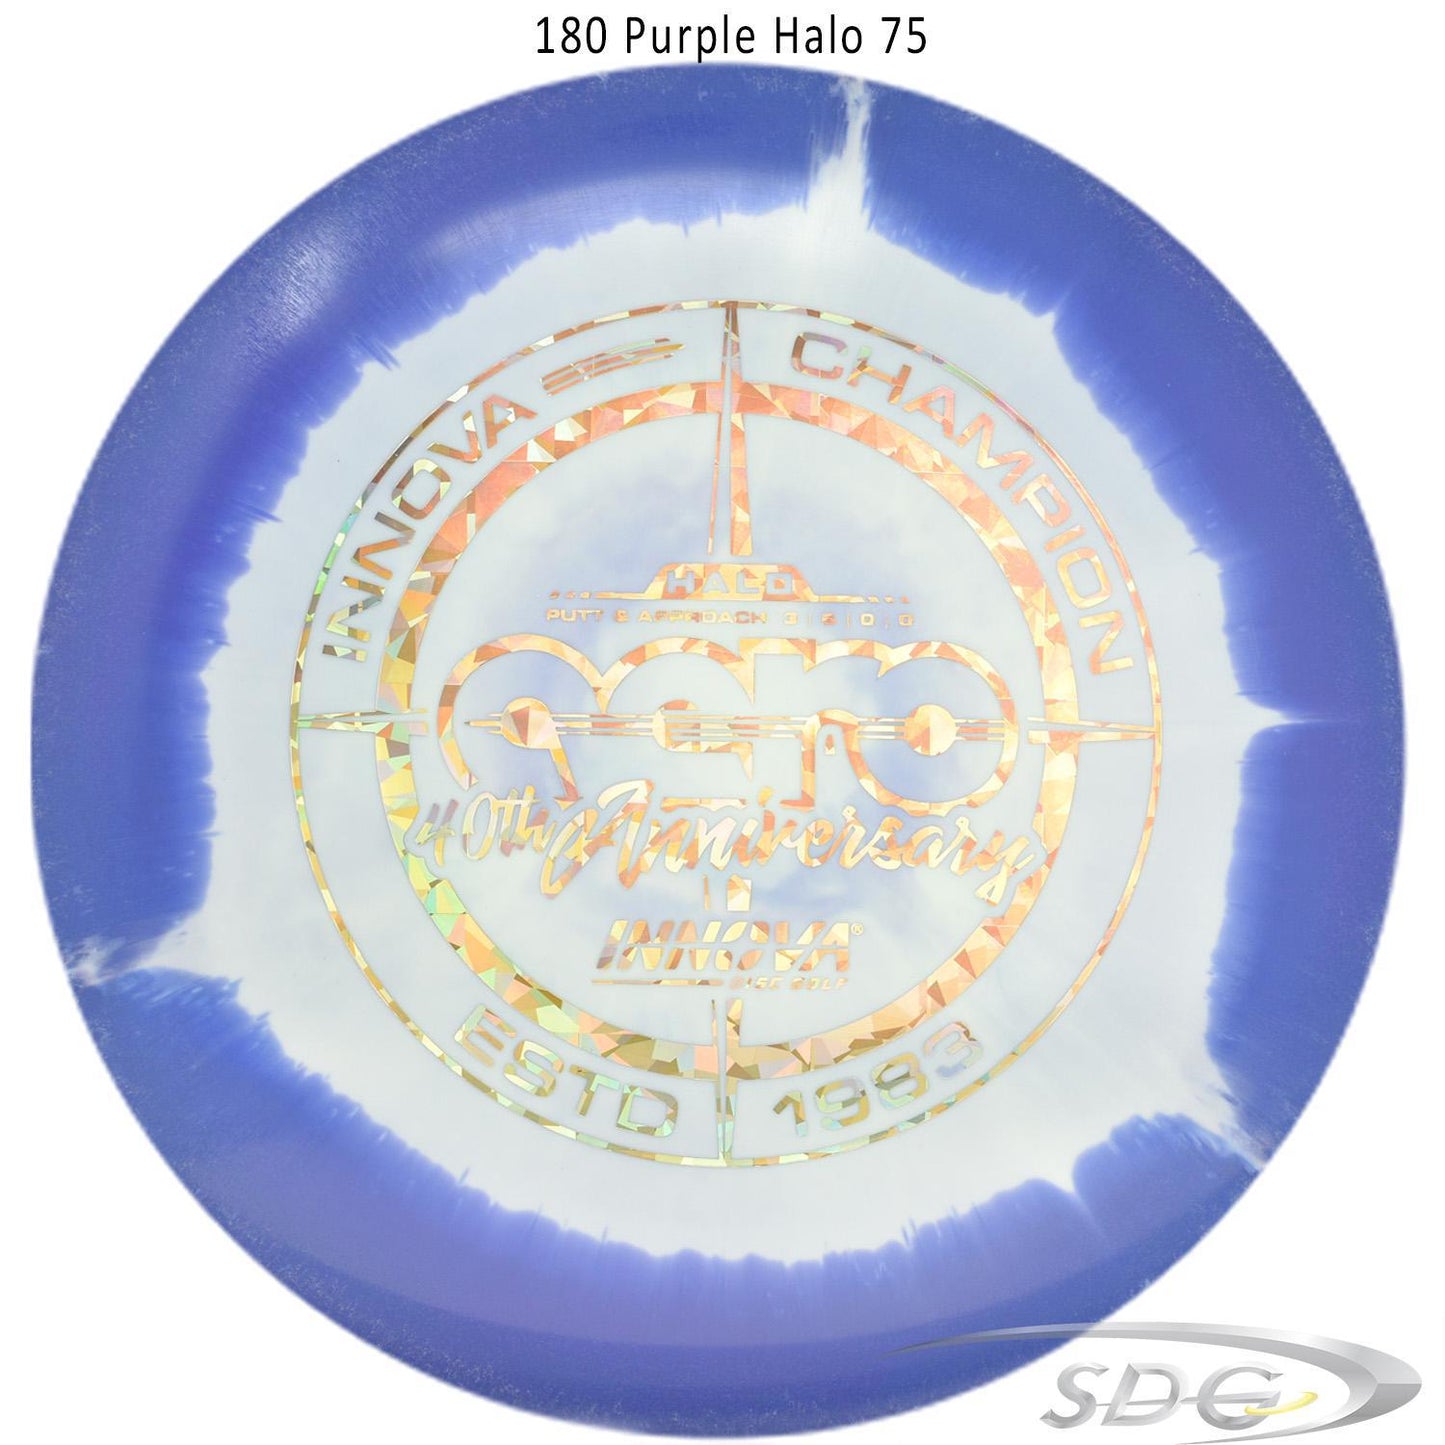 innova-halo-star-aero-40th-anniversary-le-disc-golf-putter 180 Purple Halo 75 